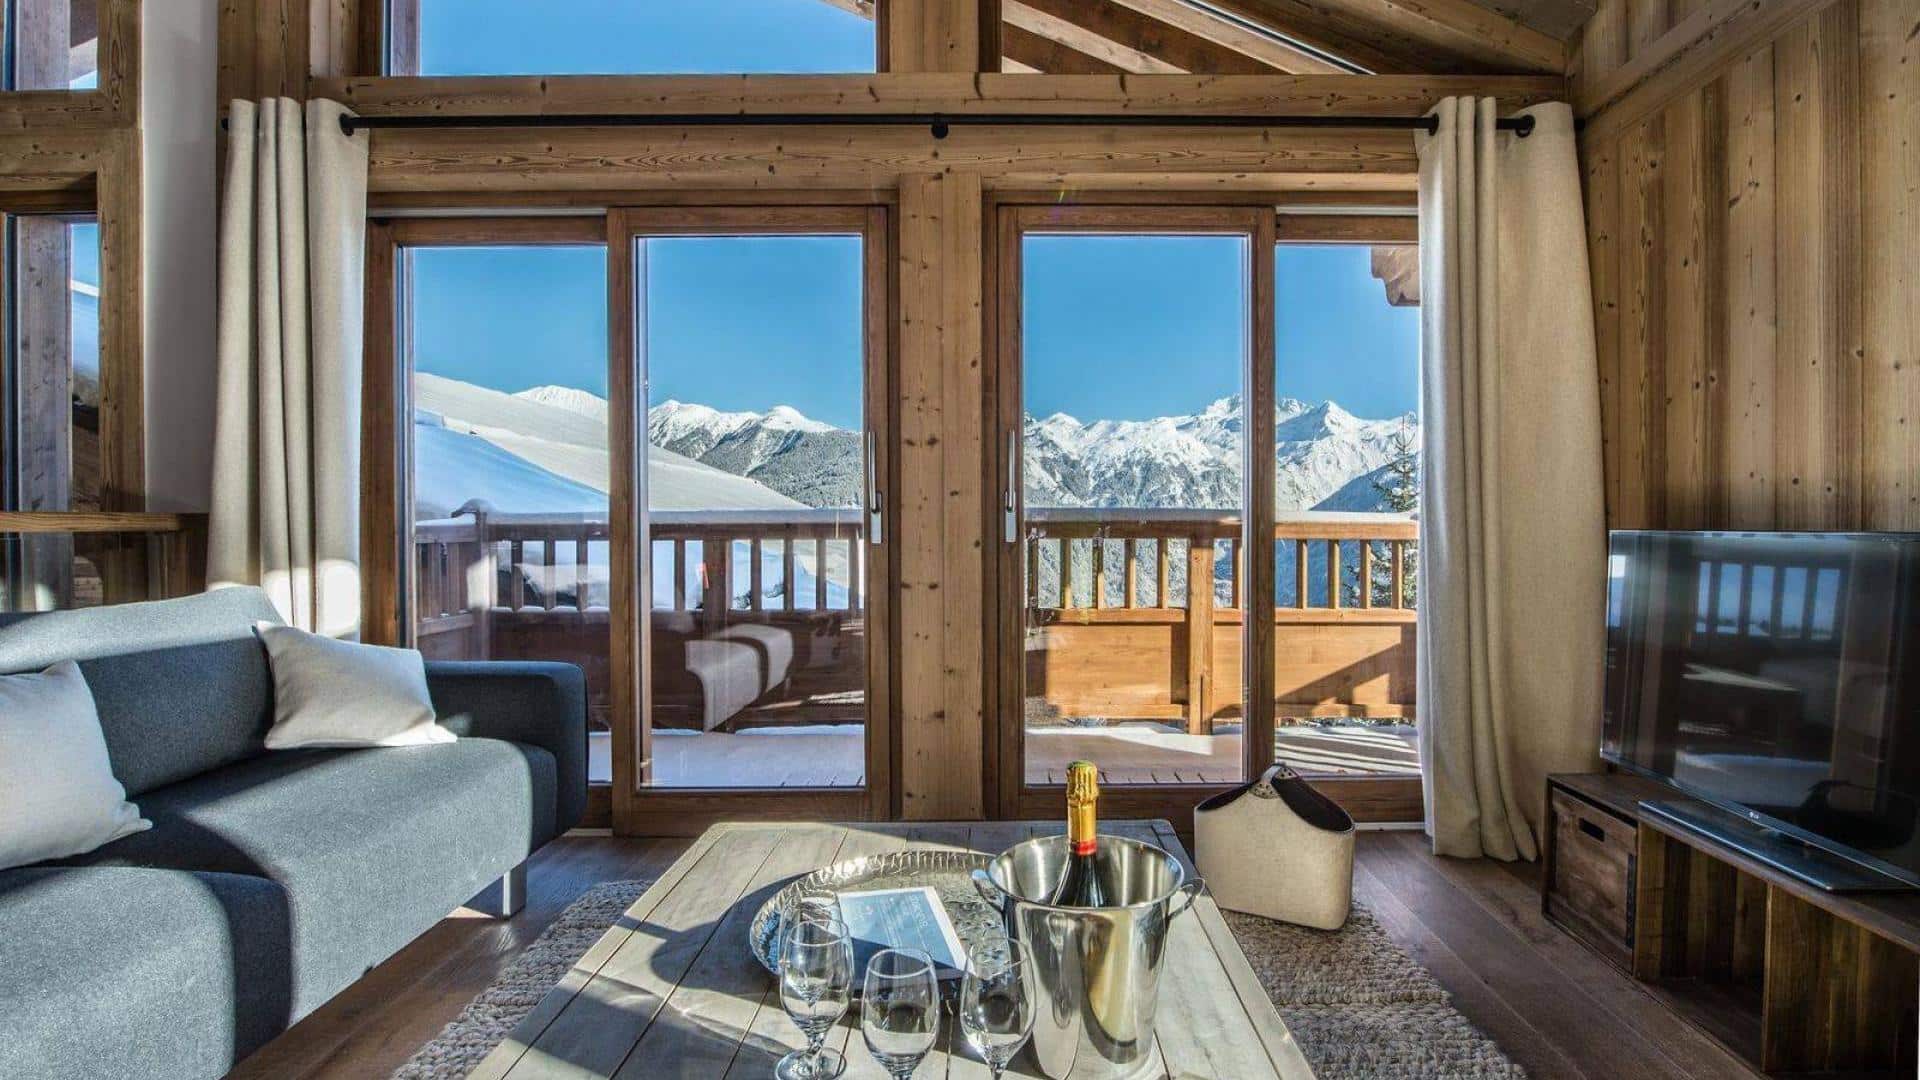 photo du chalet anika depuis le salon avec la vue sur les montagnes et la terrasse. sur la table basse, le champagne est disposé avec des flutes.